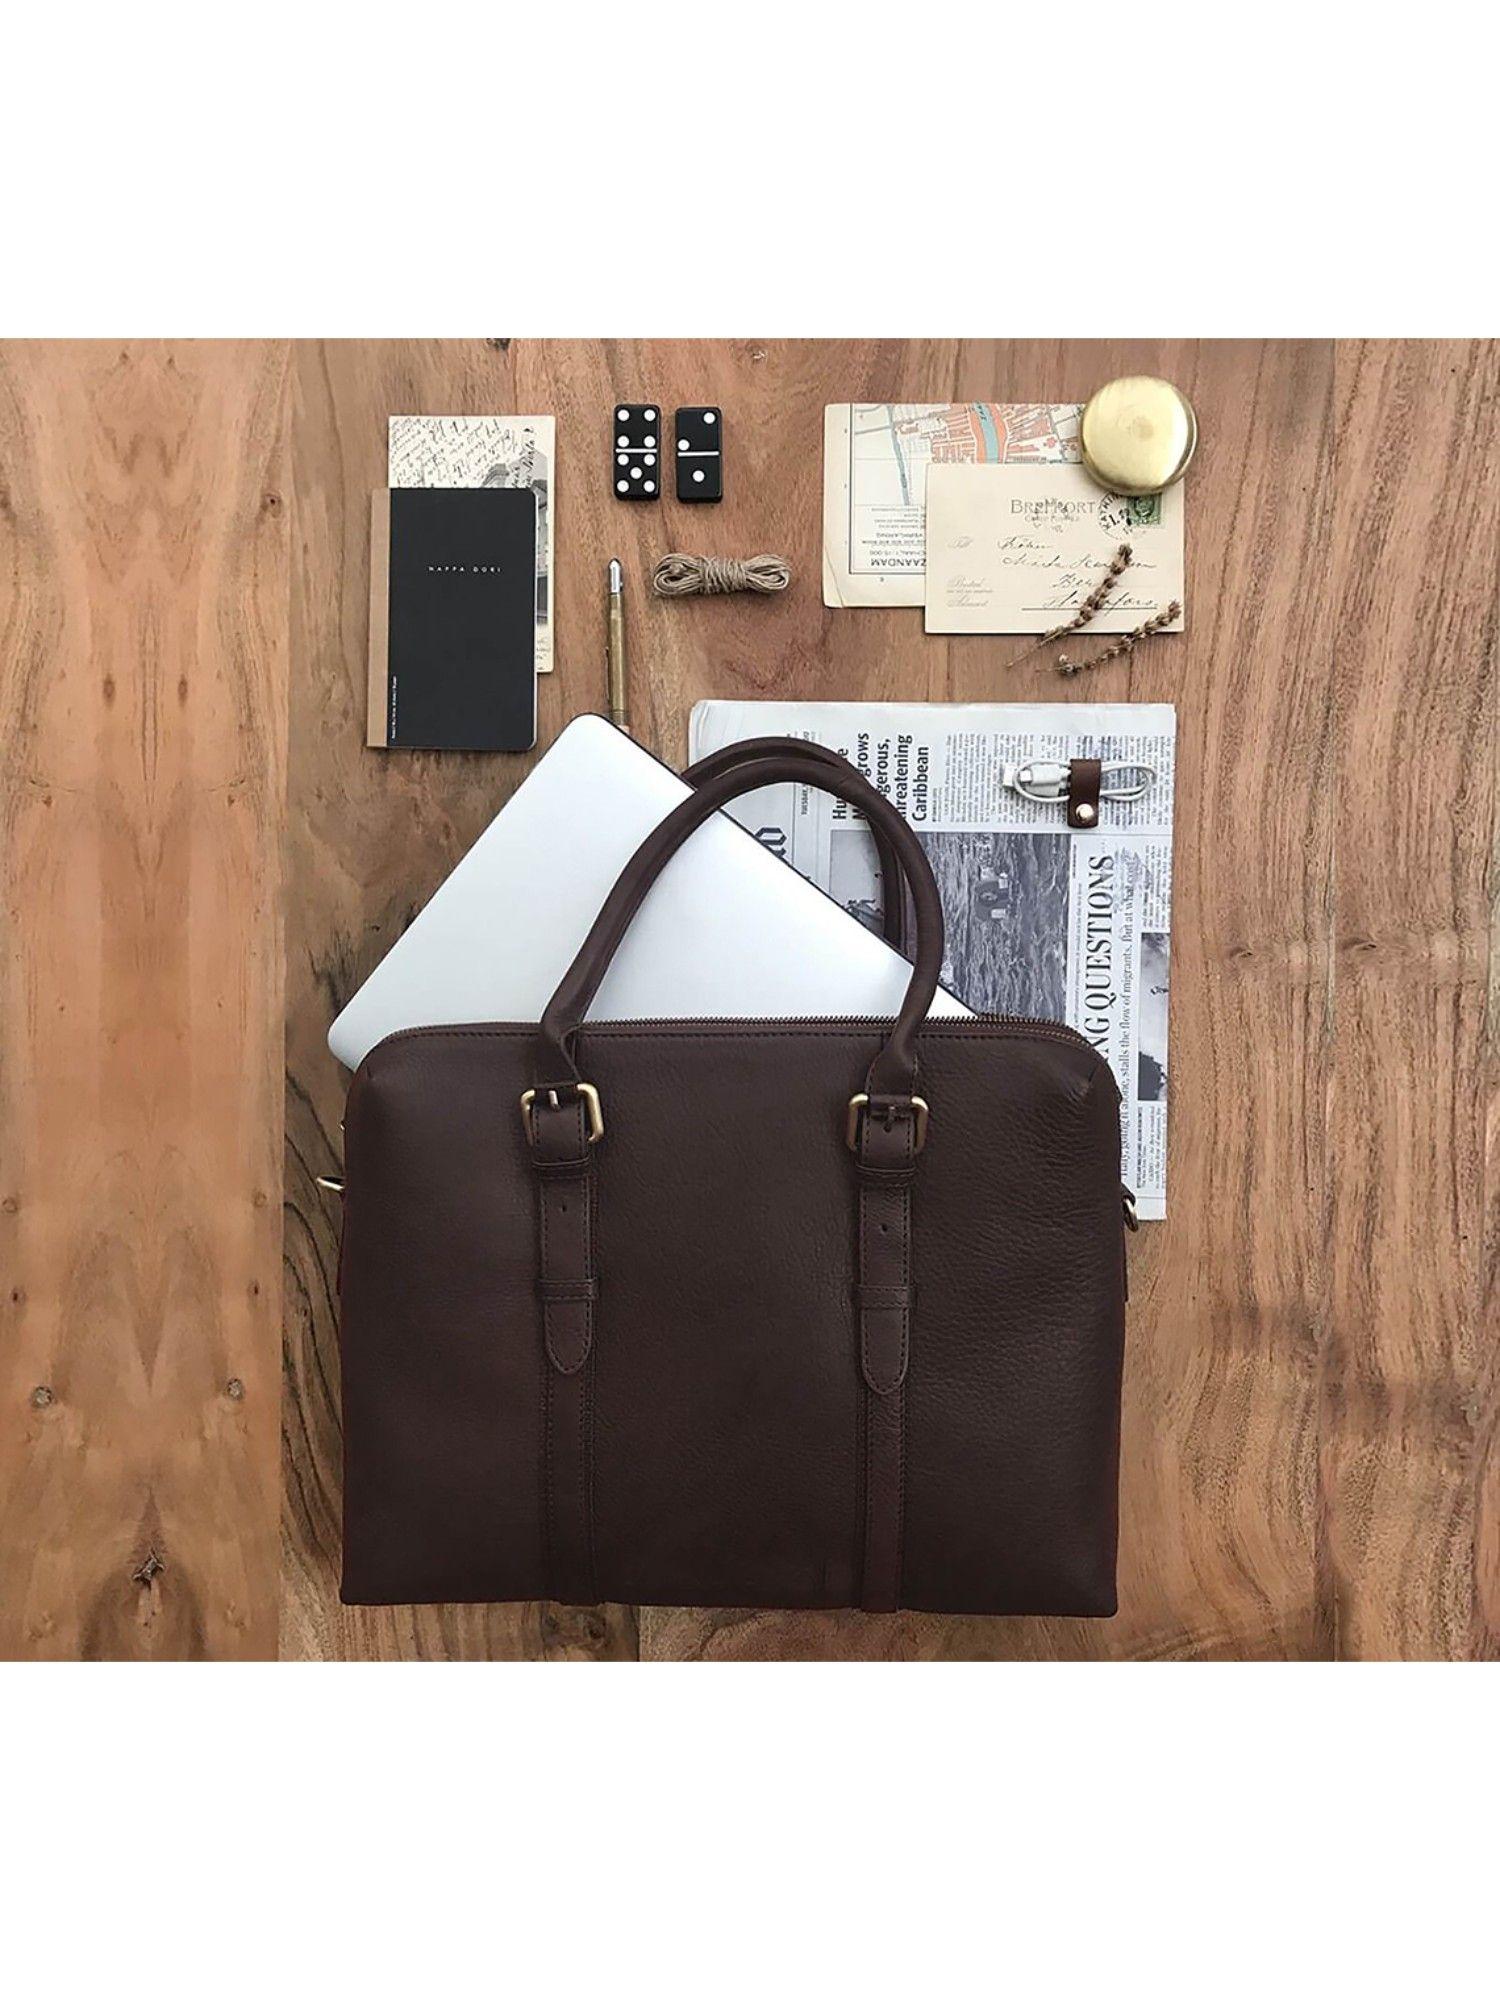 dark brown dual zip laptop bag